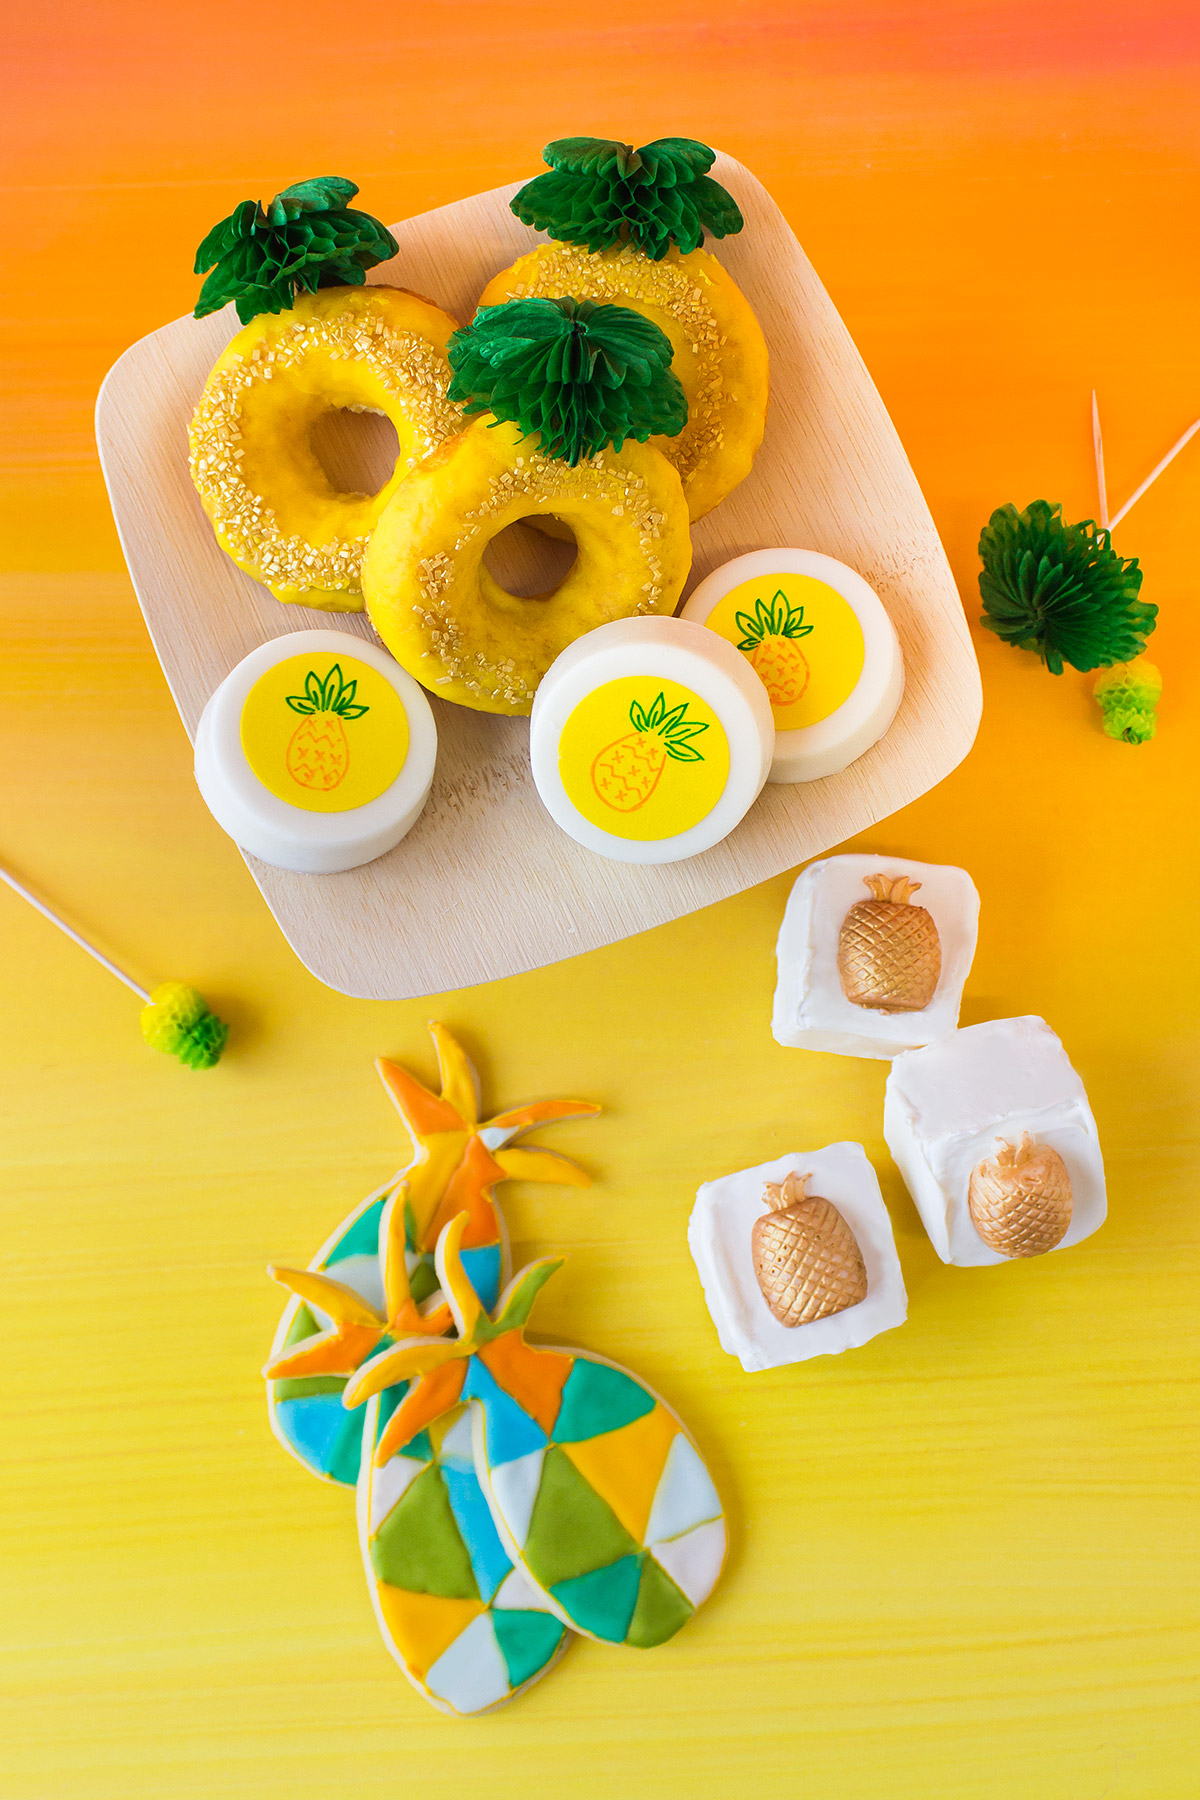 Spongebob Pineapple Baked Goods